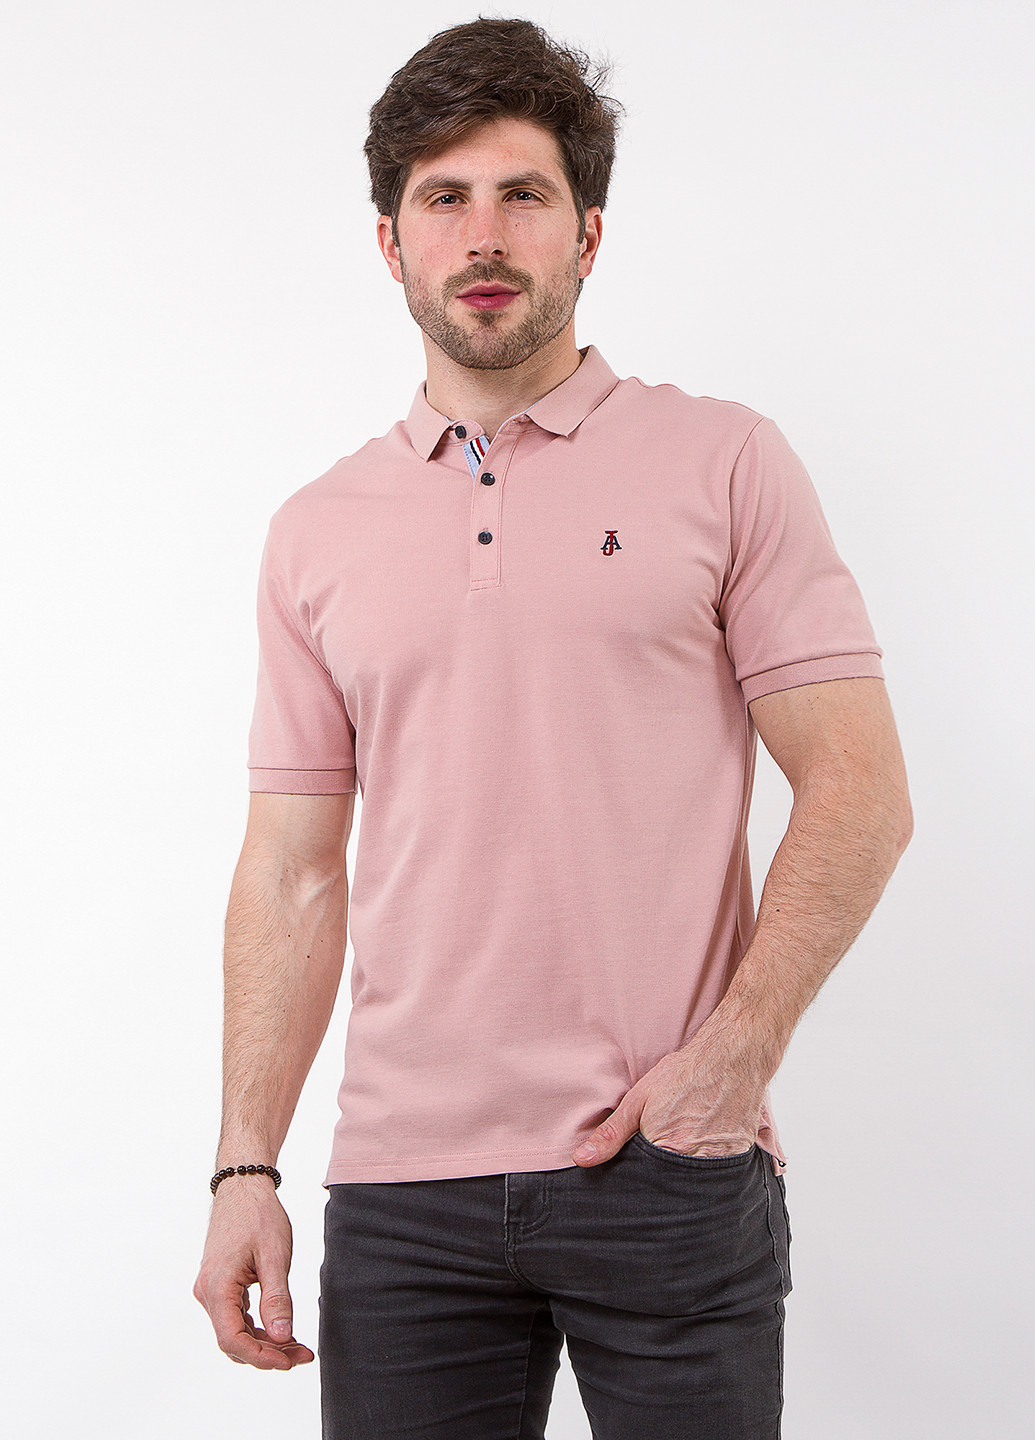 Розовая футболка-поло для мужчин Alexbenson однотонная